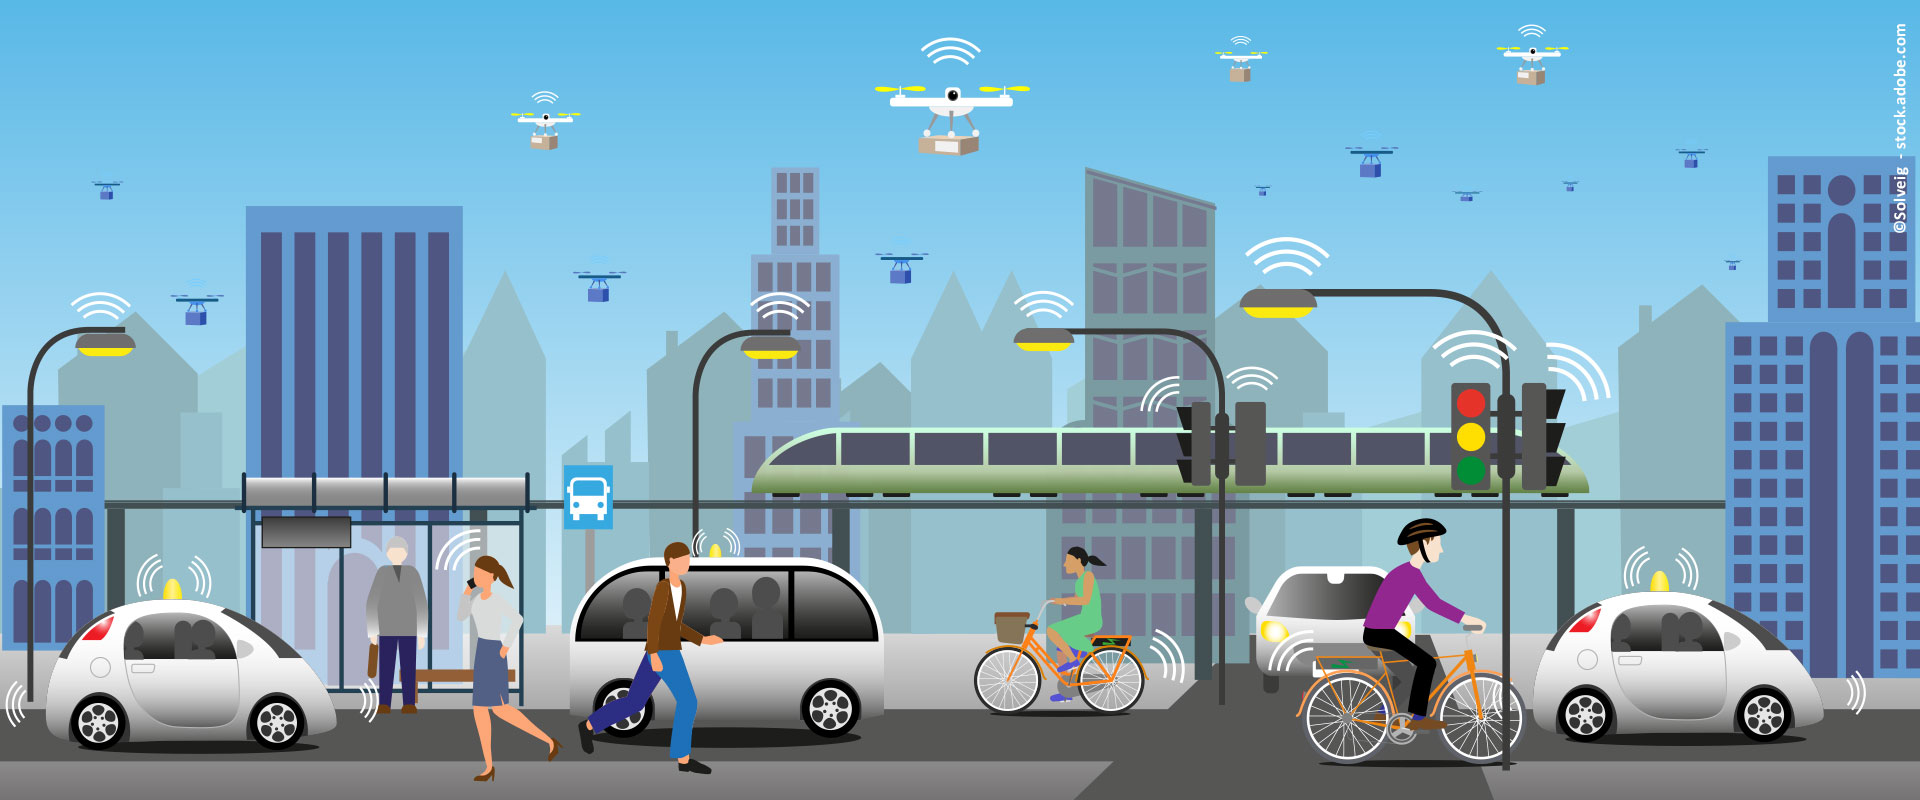 Eine Grafik, die die zukünftige Mobilität mit Paket-Drohnen und autonomen Fahrzeugen darstellt